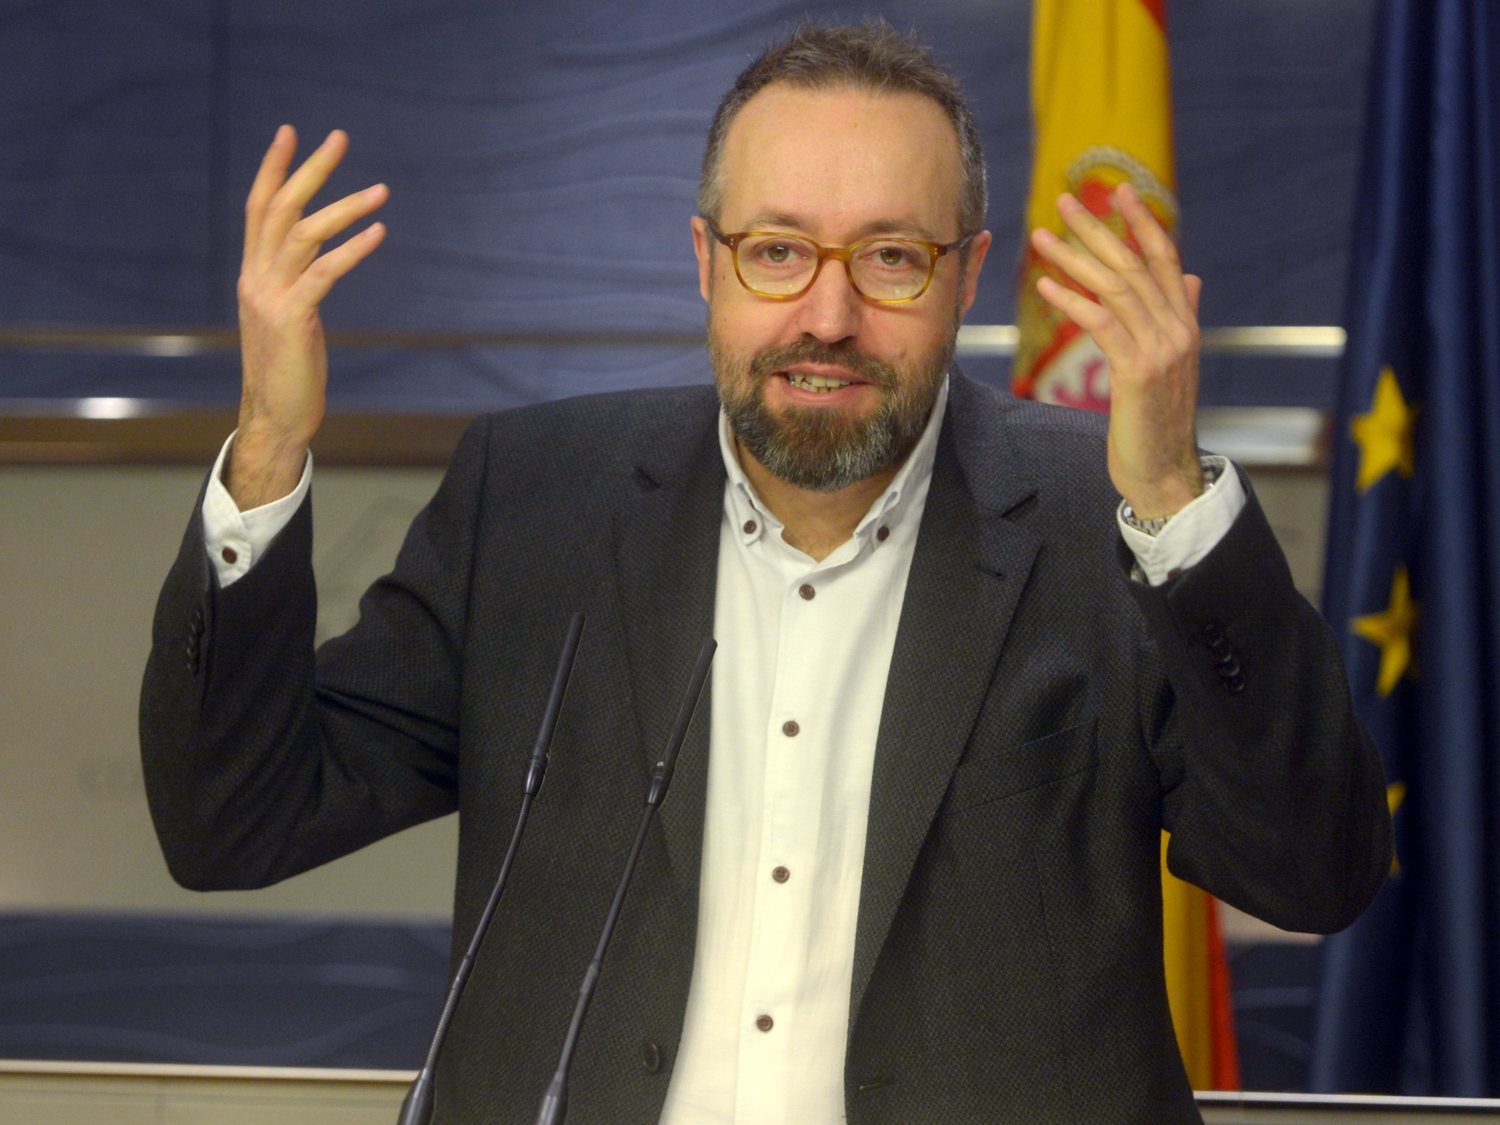 La doble moral de Girauta (Ciudadanos): justificó los golpes al PSOE en una manifestación